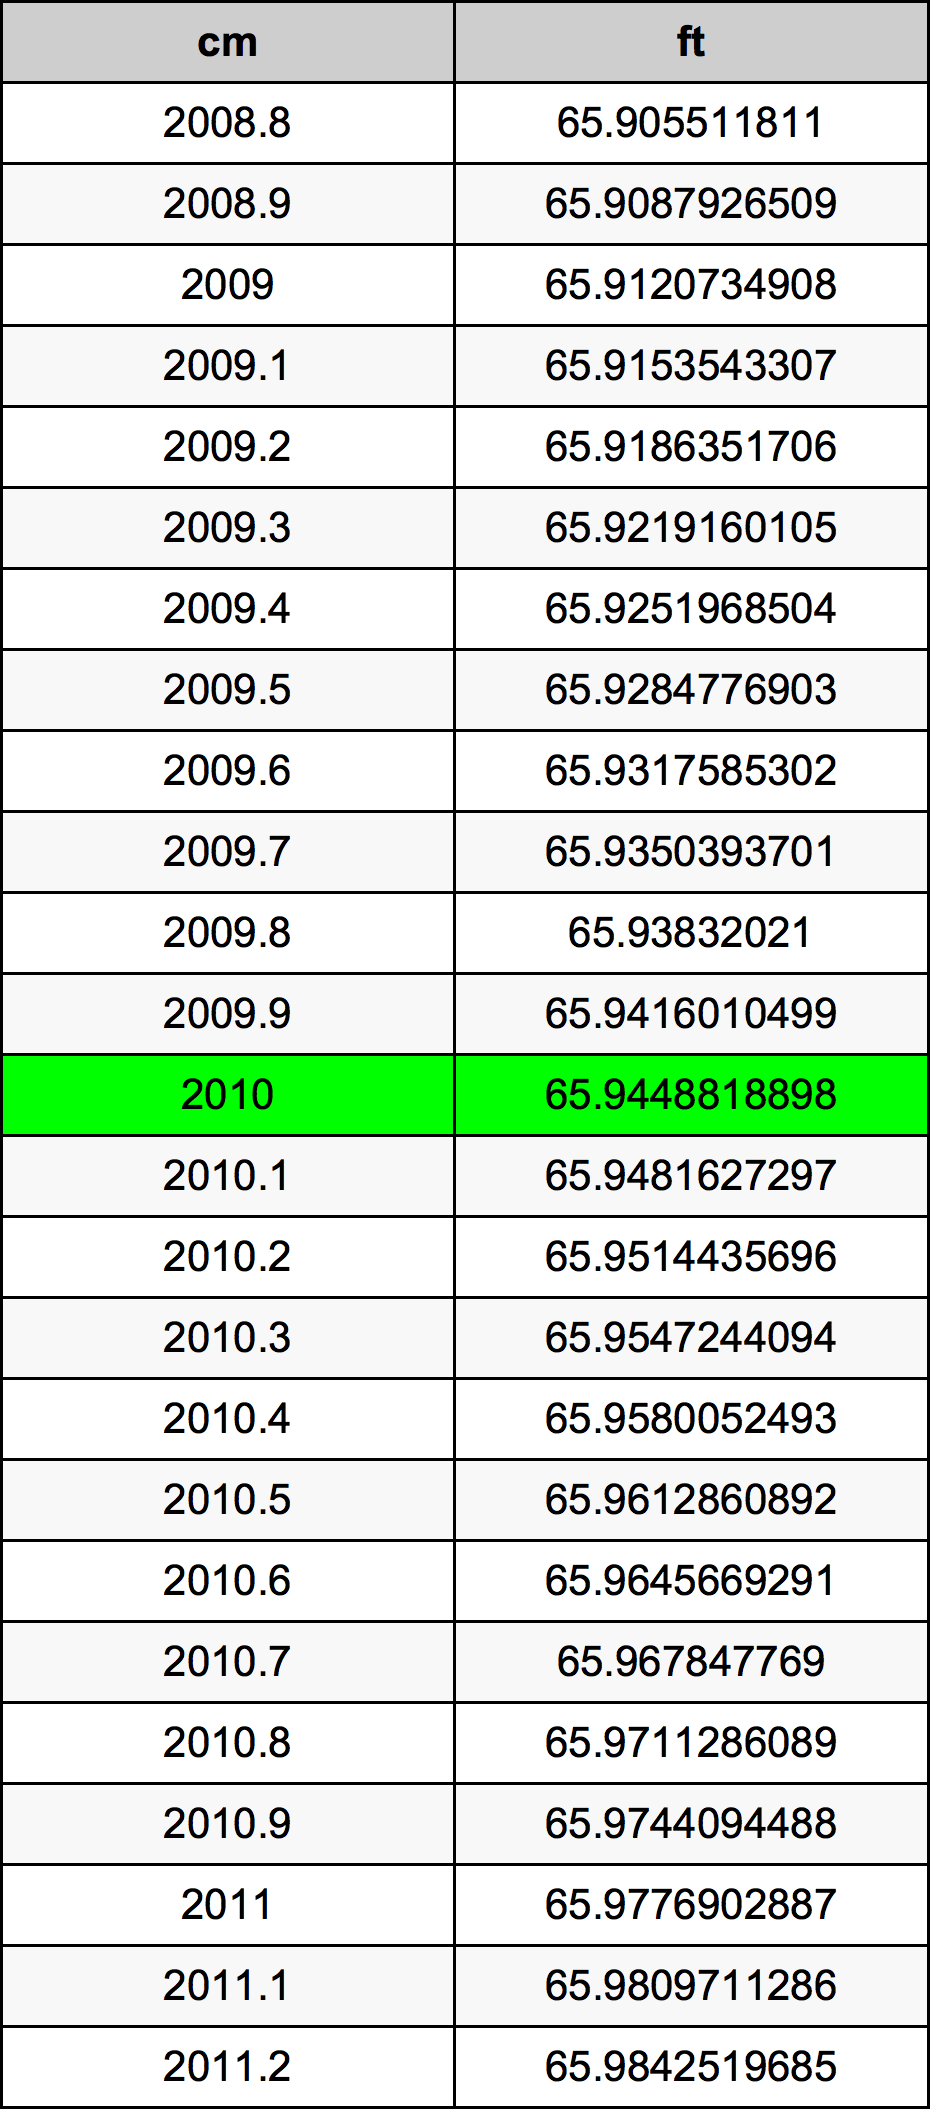 2010 Centimetre Table